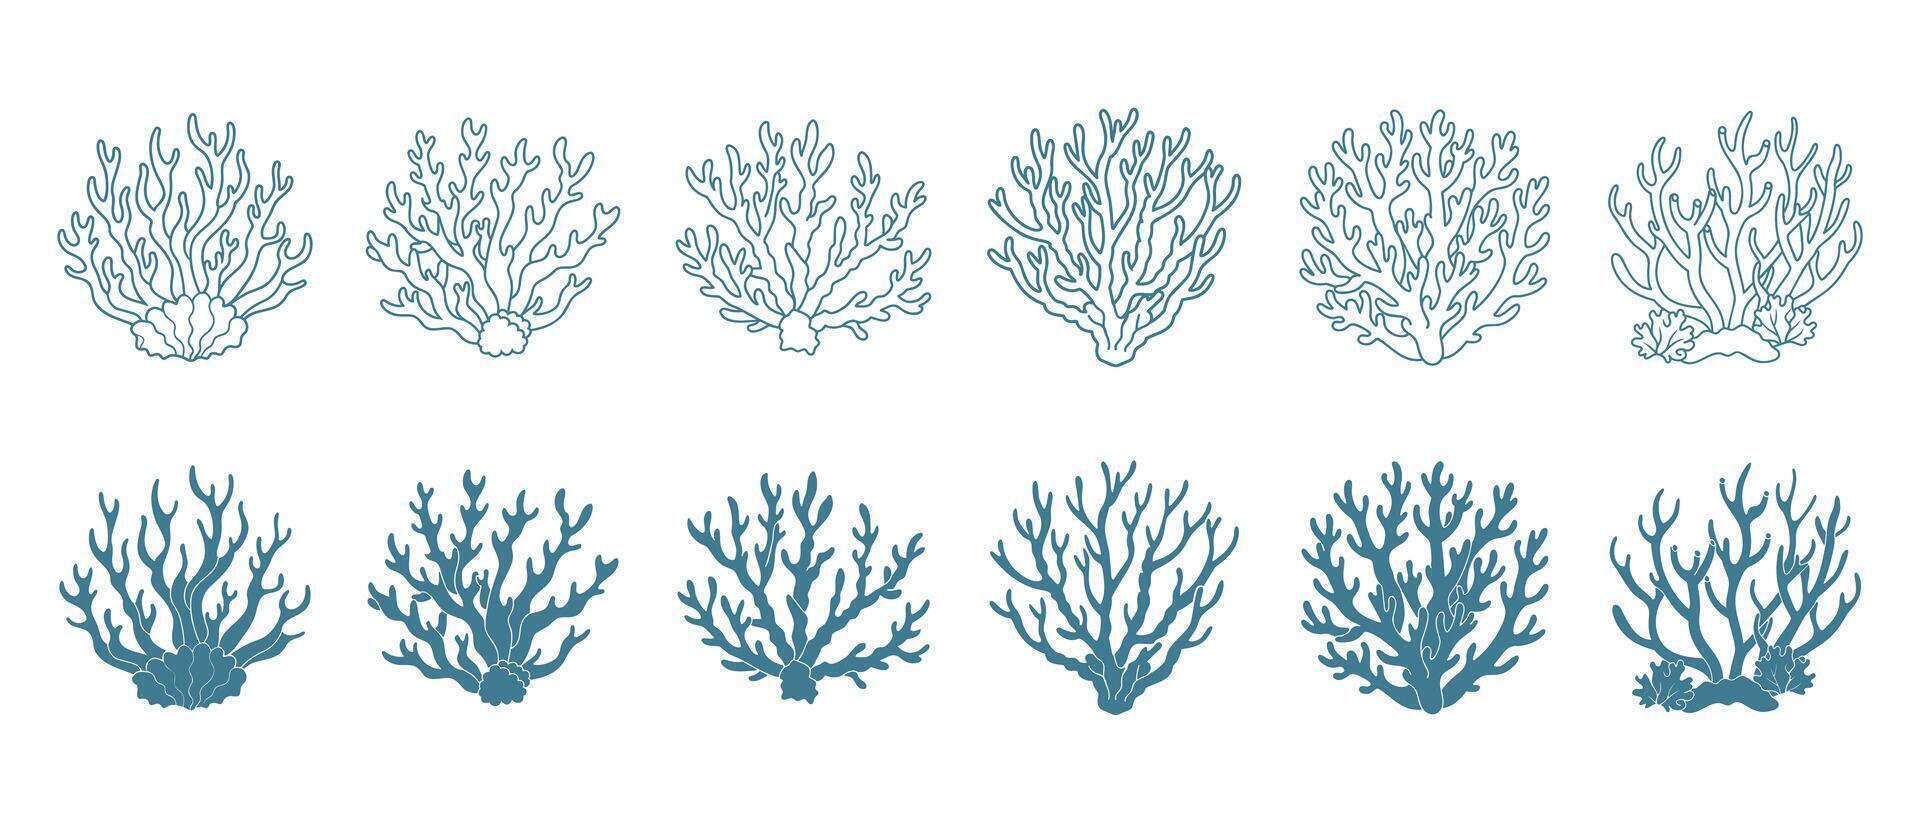 reeks van koraal riffen of zeewier, onderwater- planten. reeks van zee koraal pictogrammen. schetsen, illustratie. vector